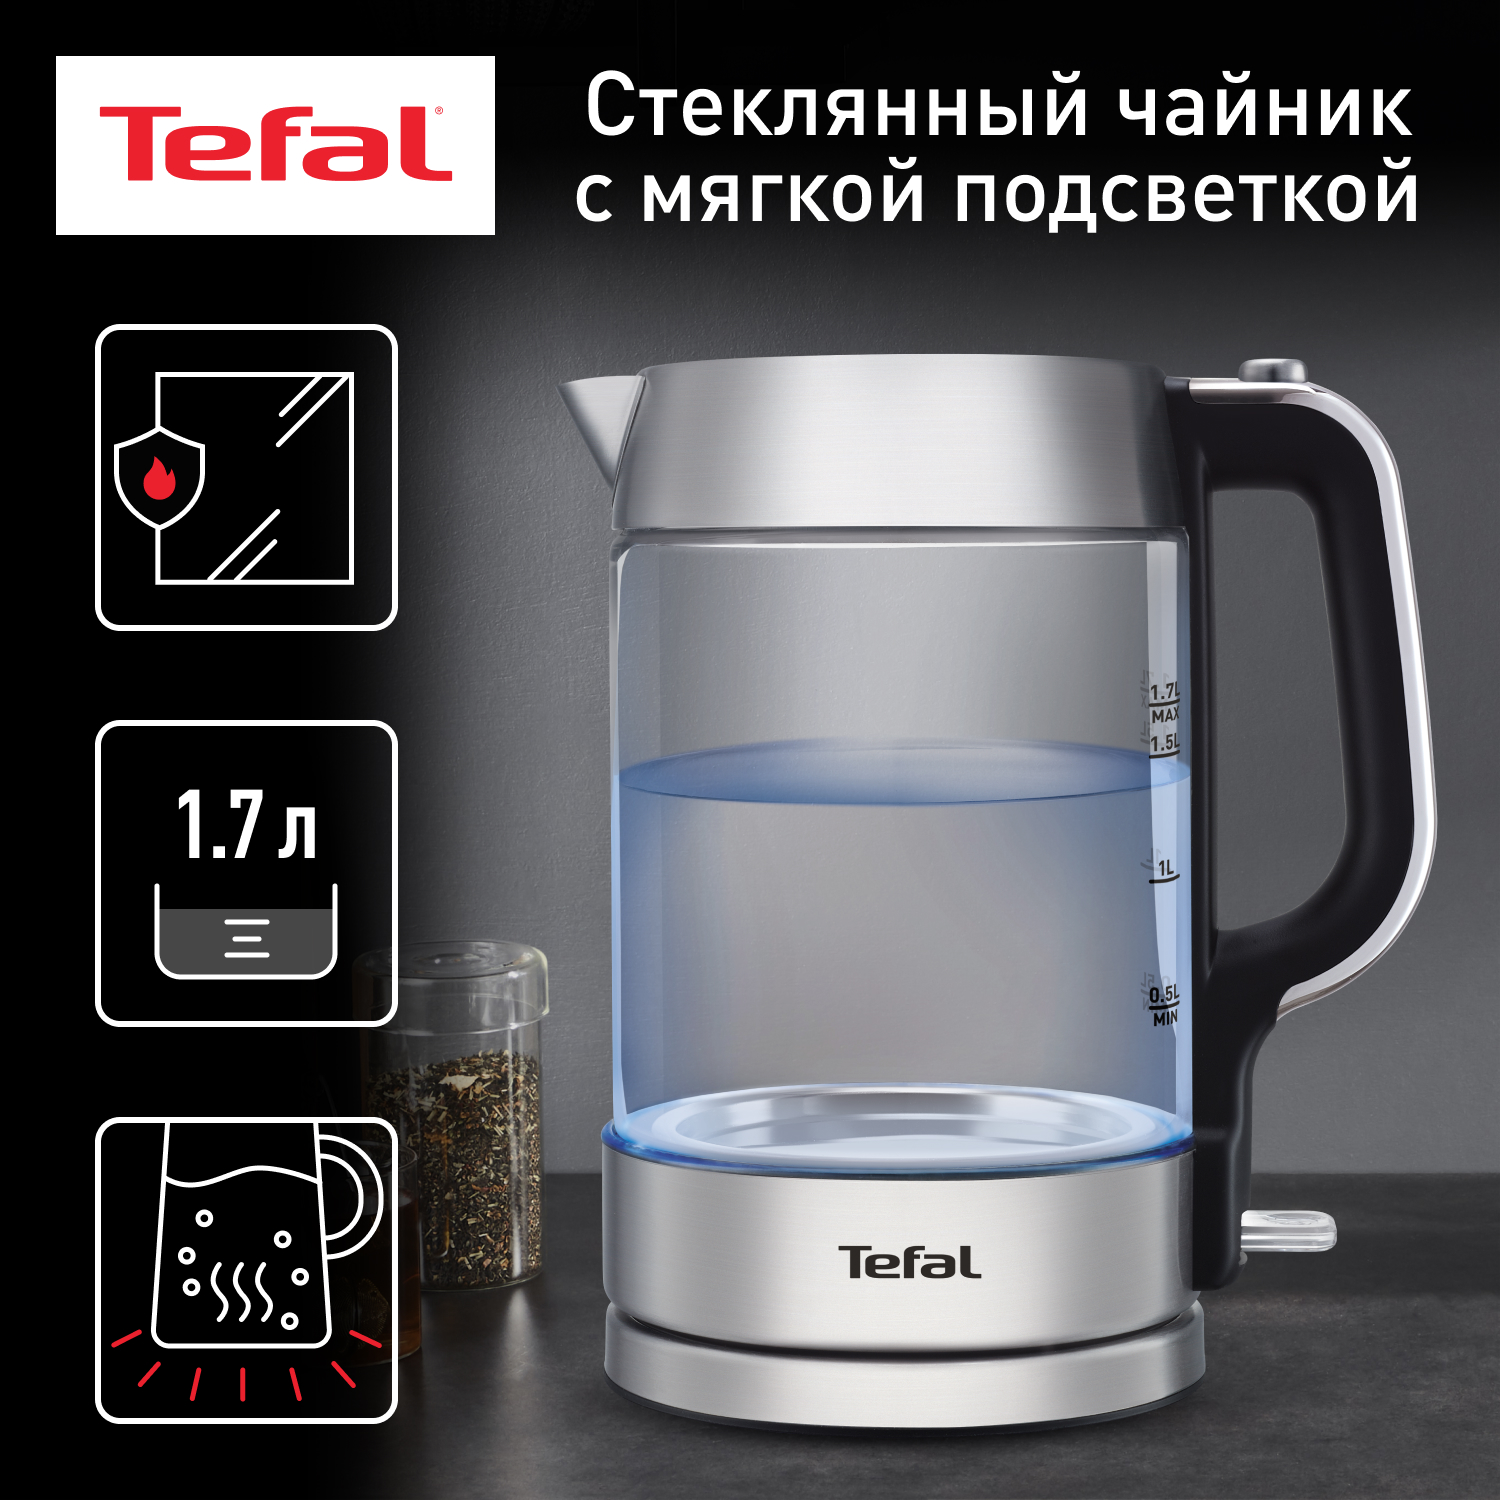 Чайник электрический Tefal KI770D30 1.7 л серебристый, черный чайник электрический tefal ki770d30 1 7 л серебристый